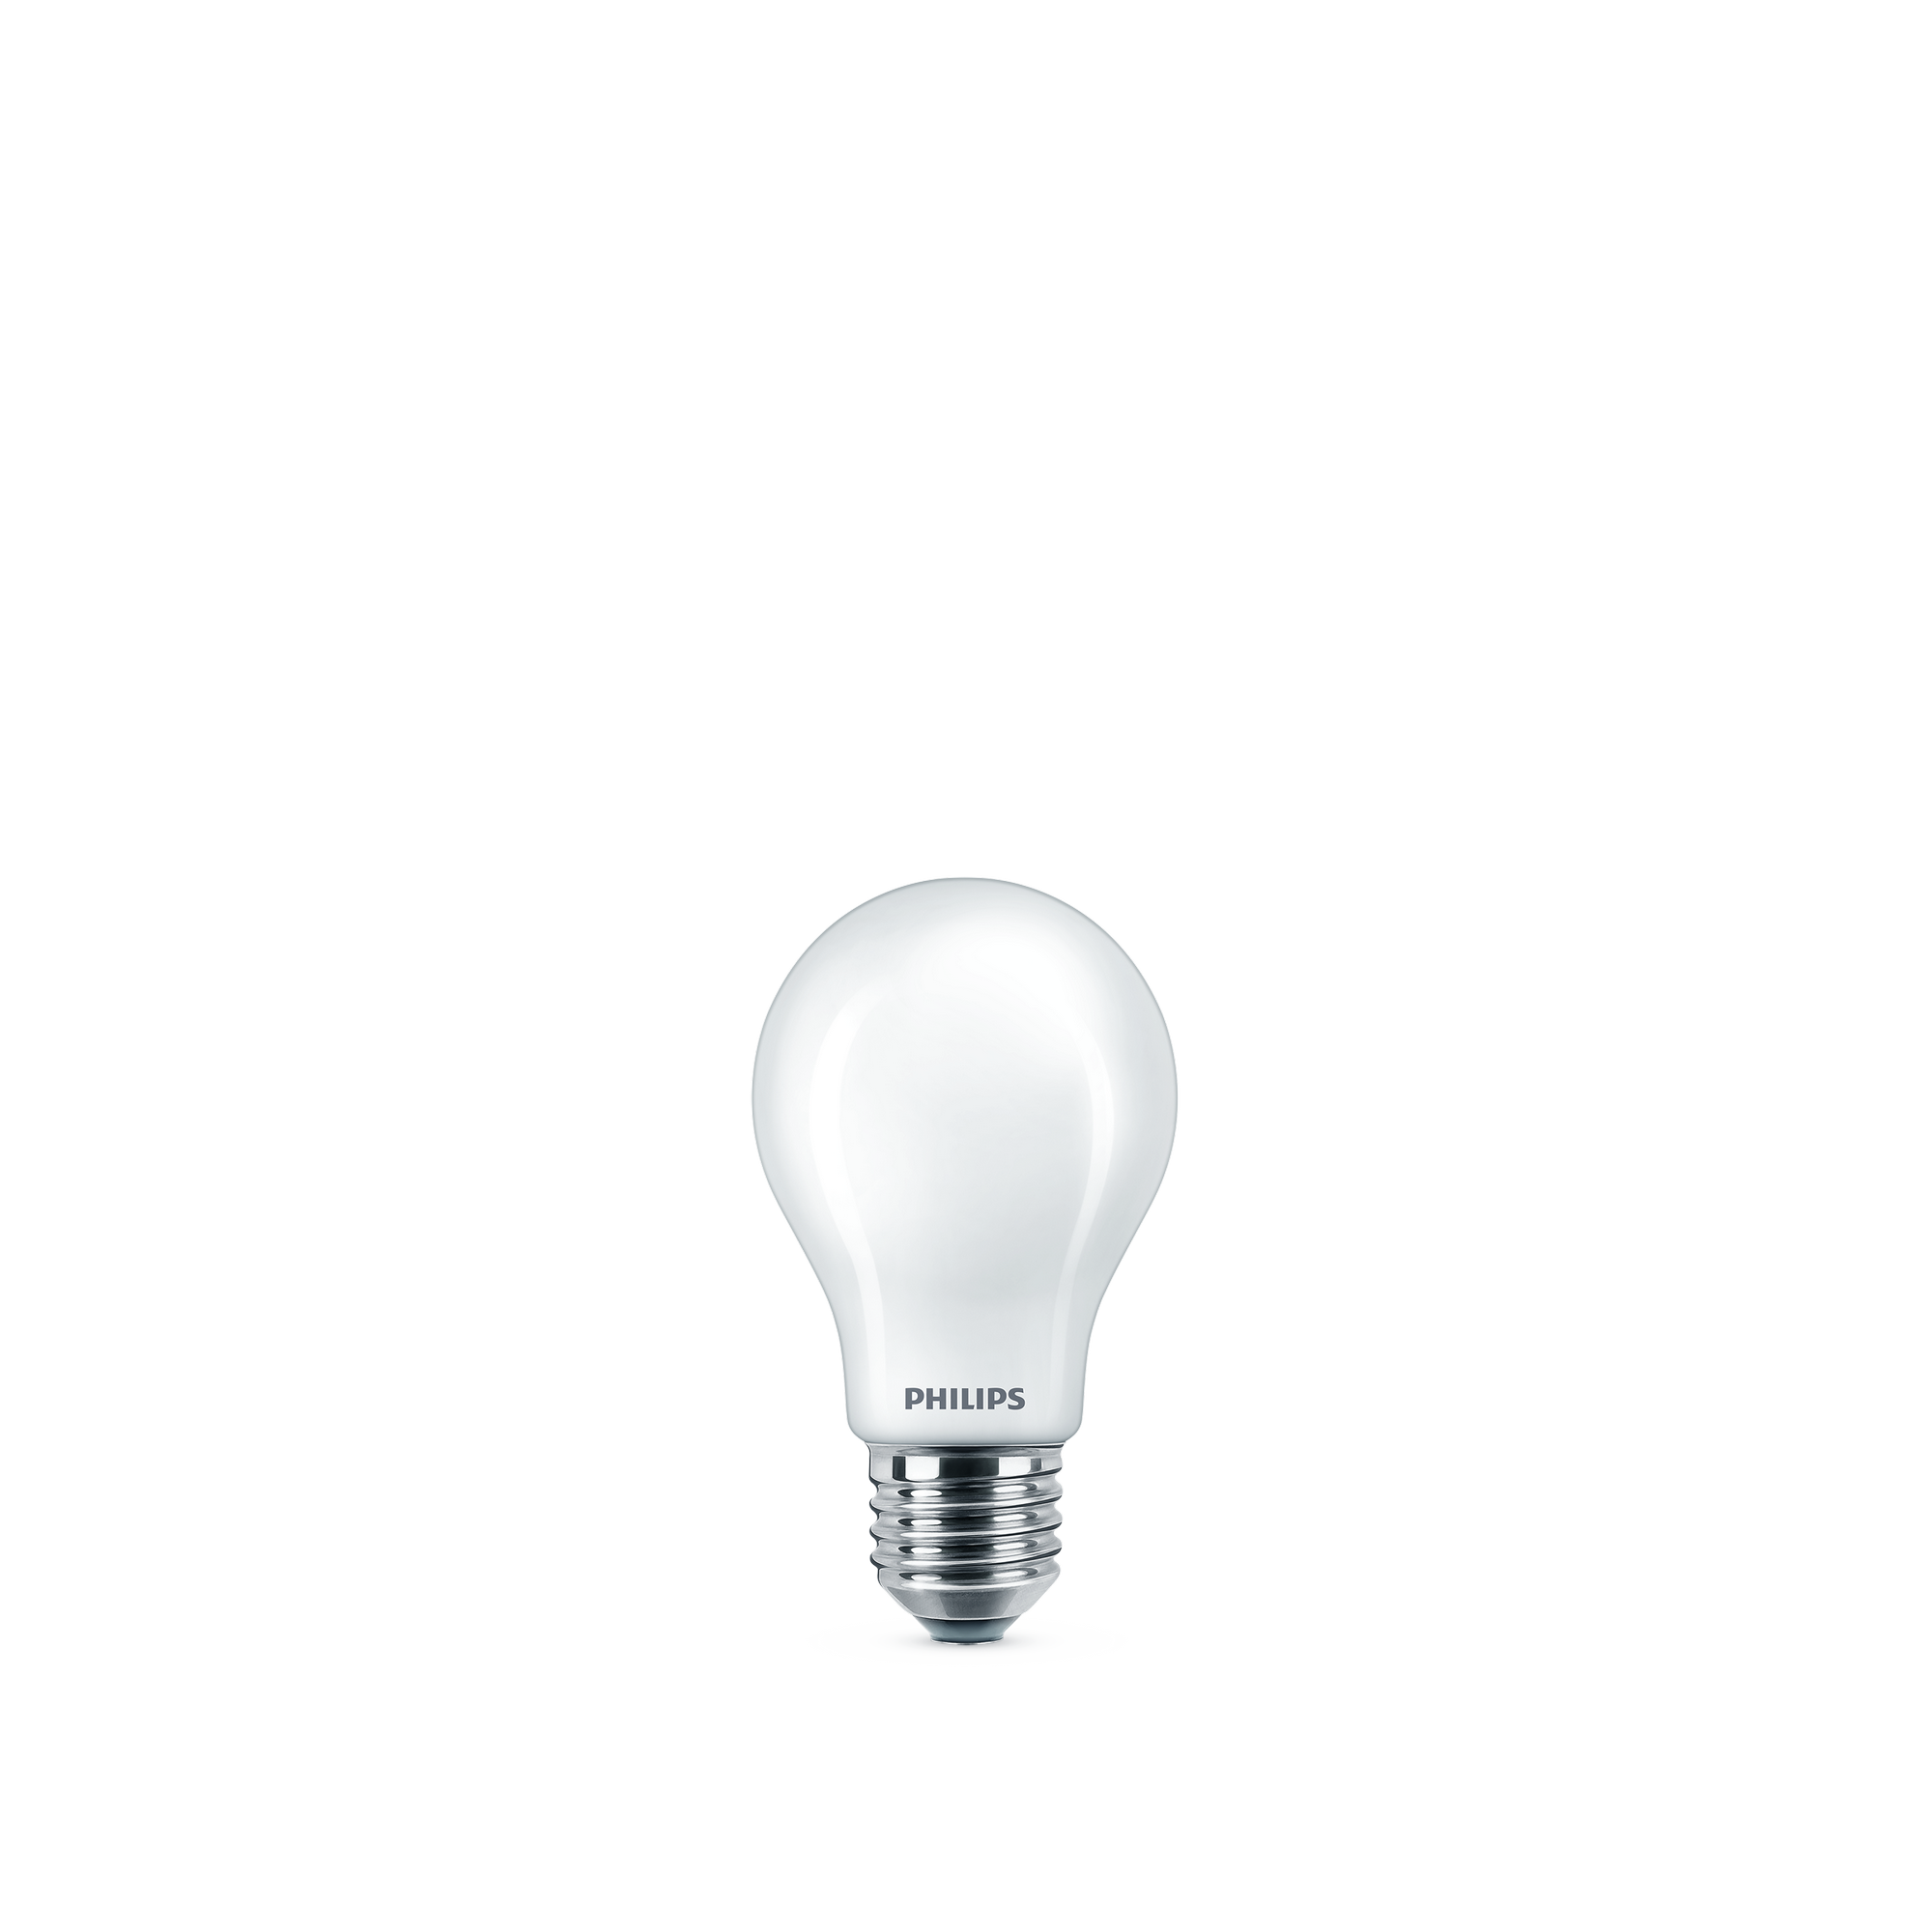 Philips LED-Lampe 'Classic' E27 7 W